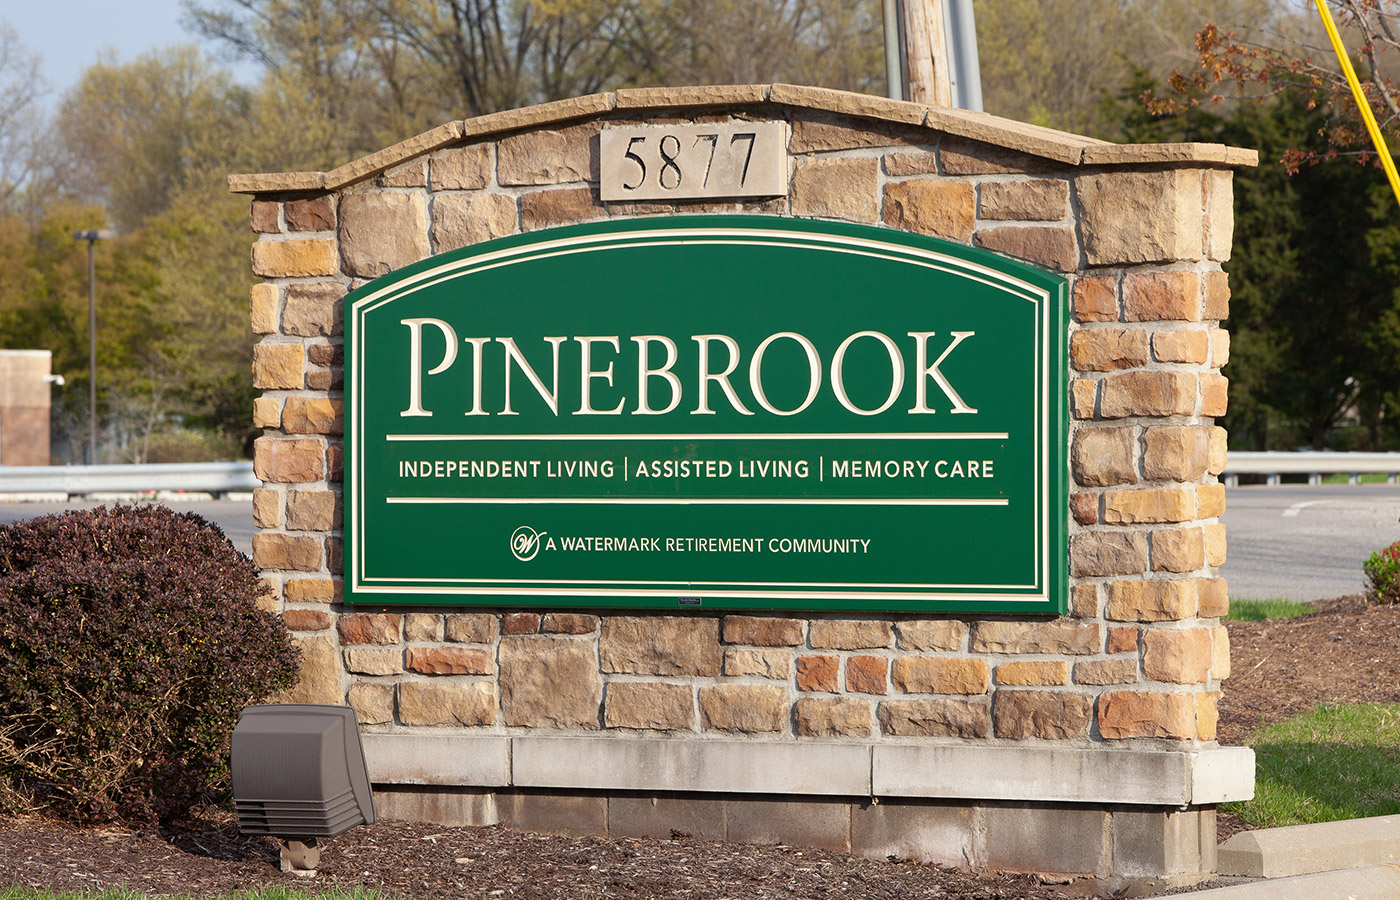 Pinebrook building entrance signage.